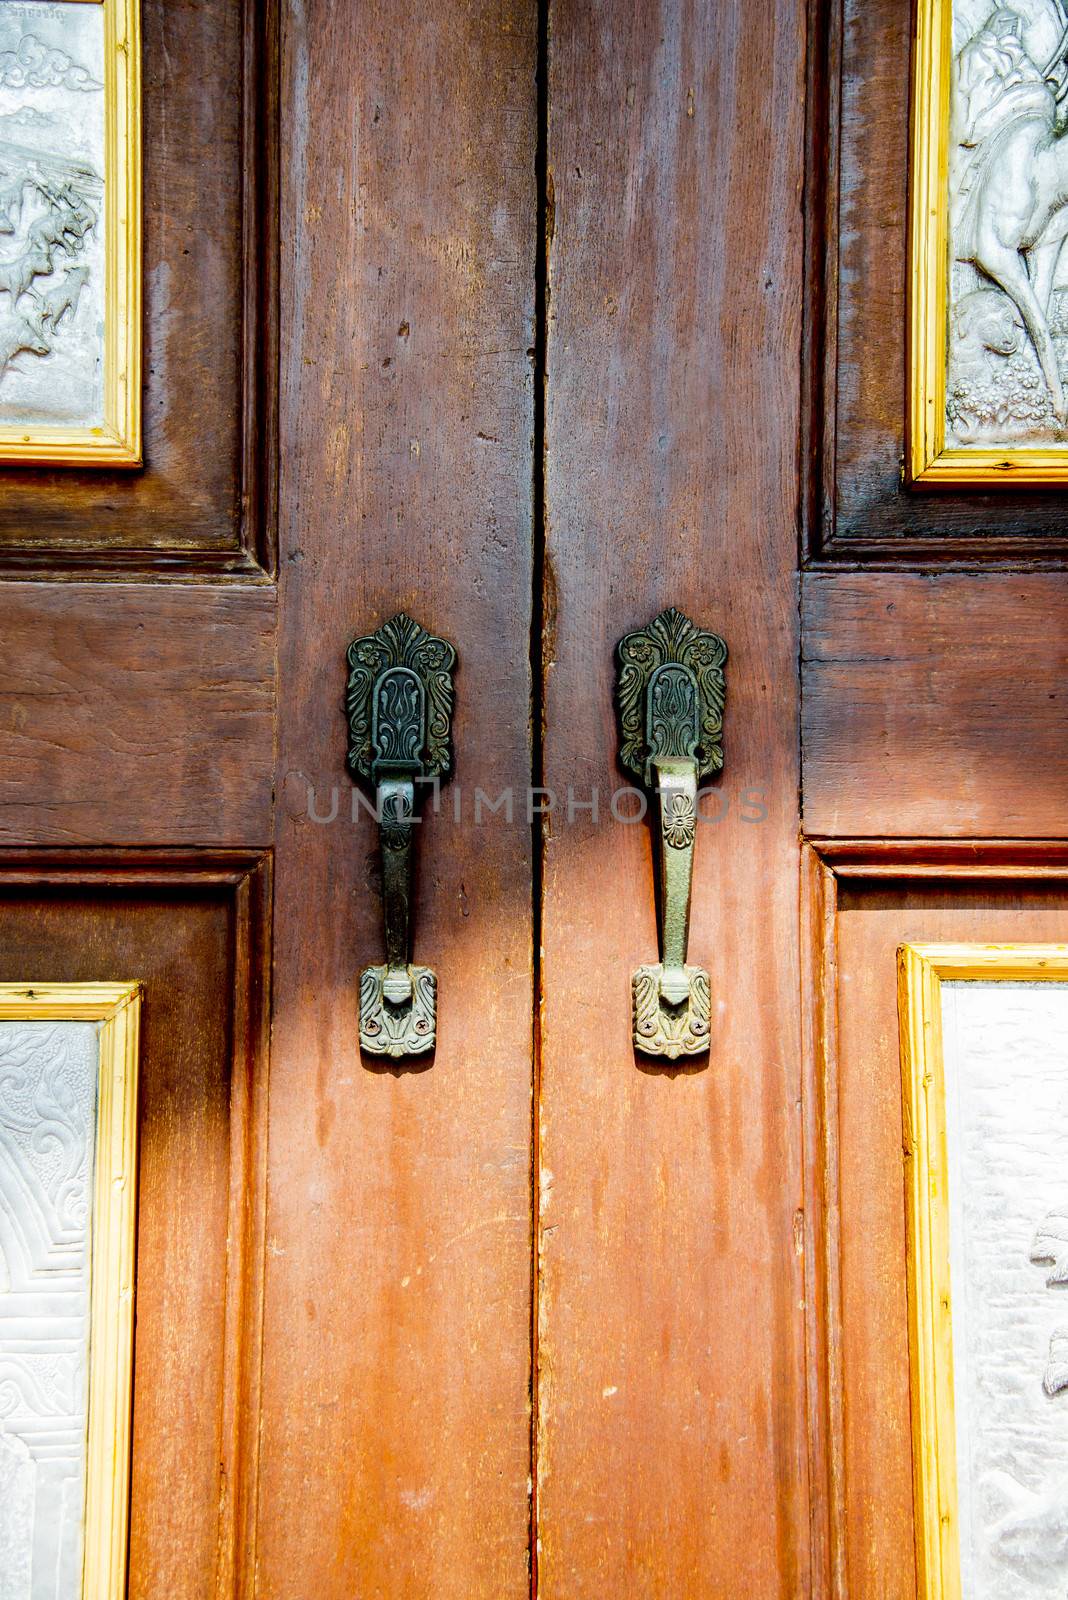 Door handle in church